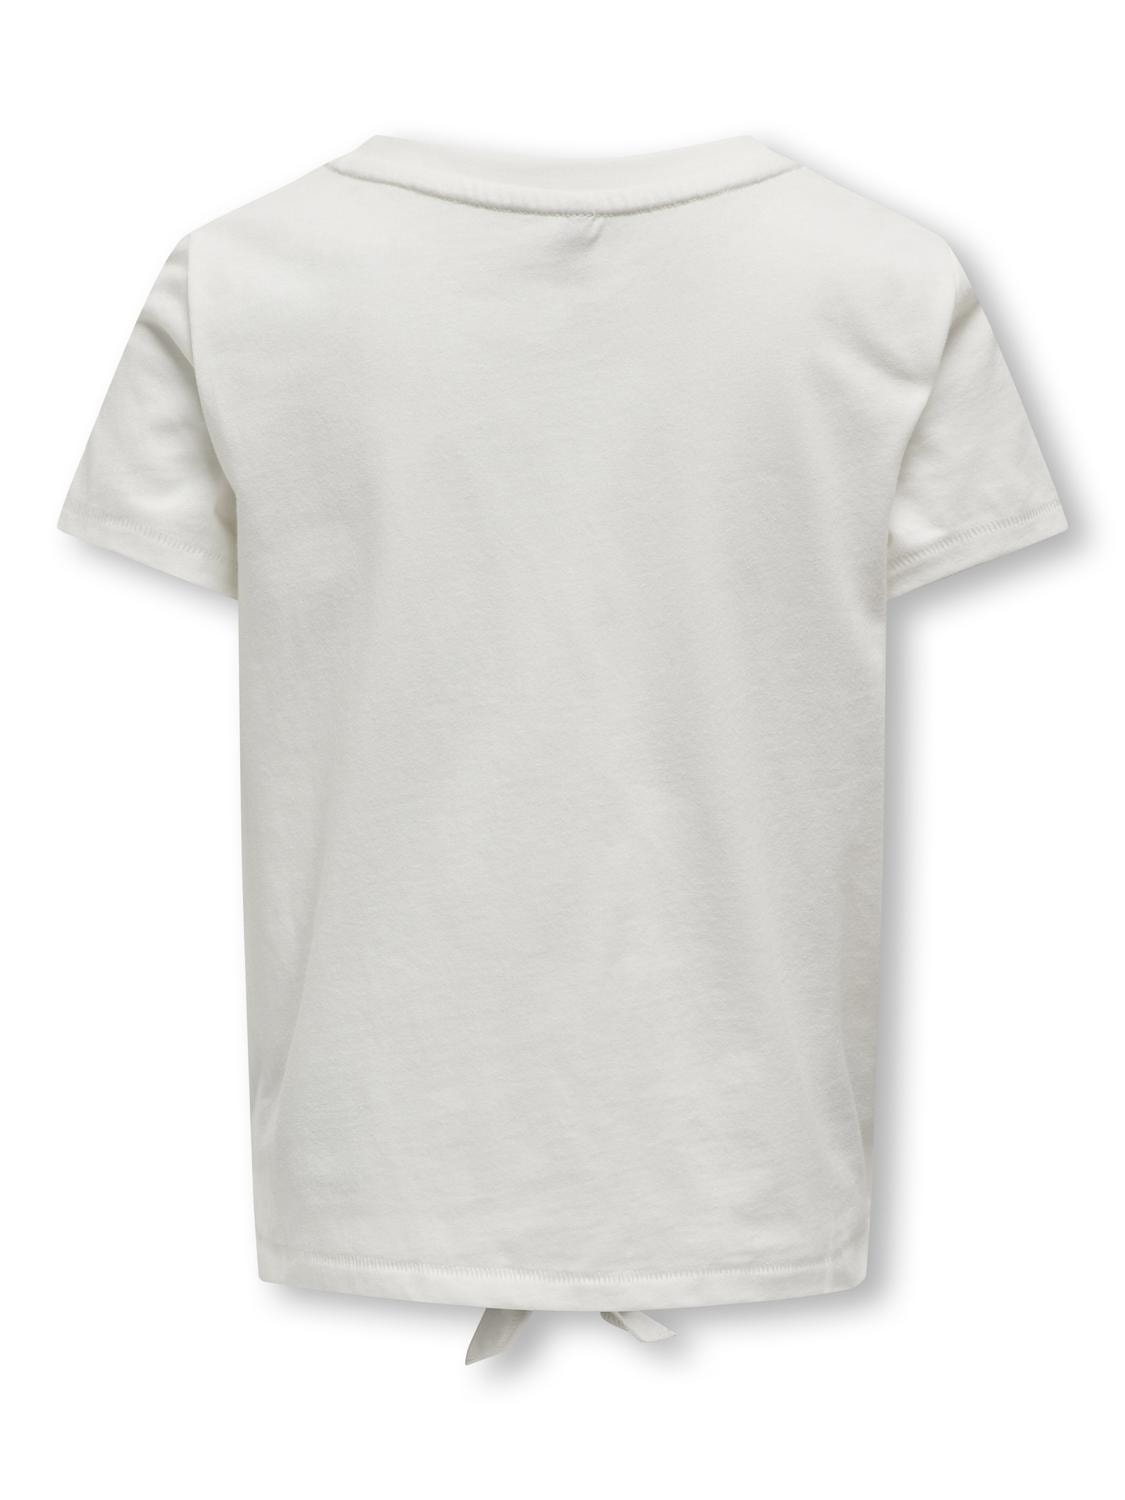 ONLY Normal geschnitten Rundhals T-Shirt -Cloud Dancer - 15317683